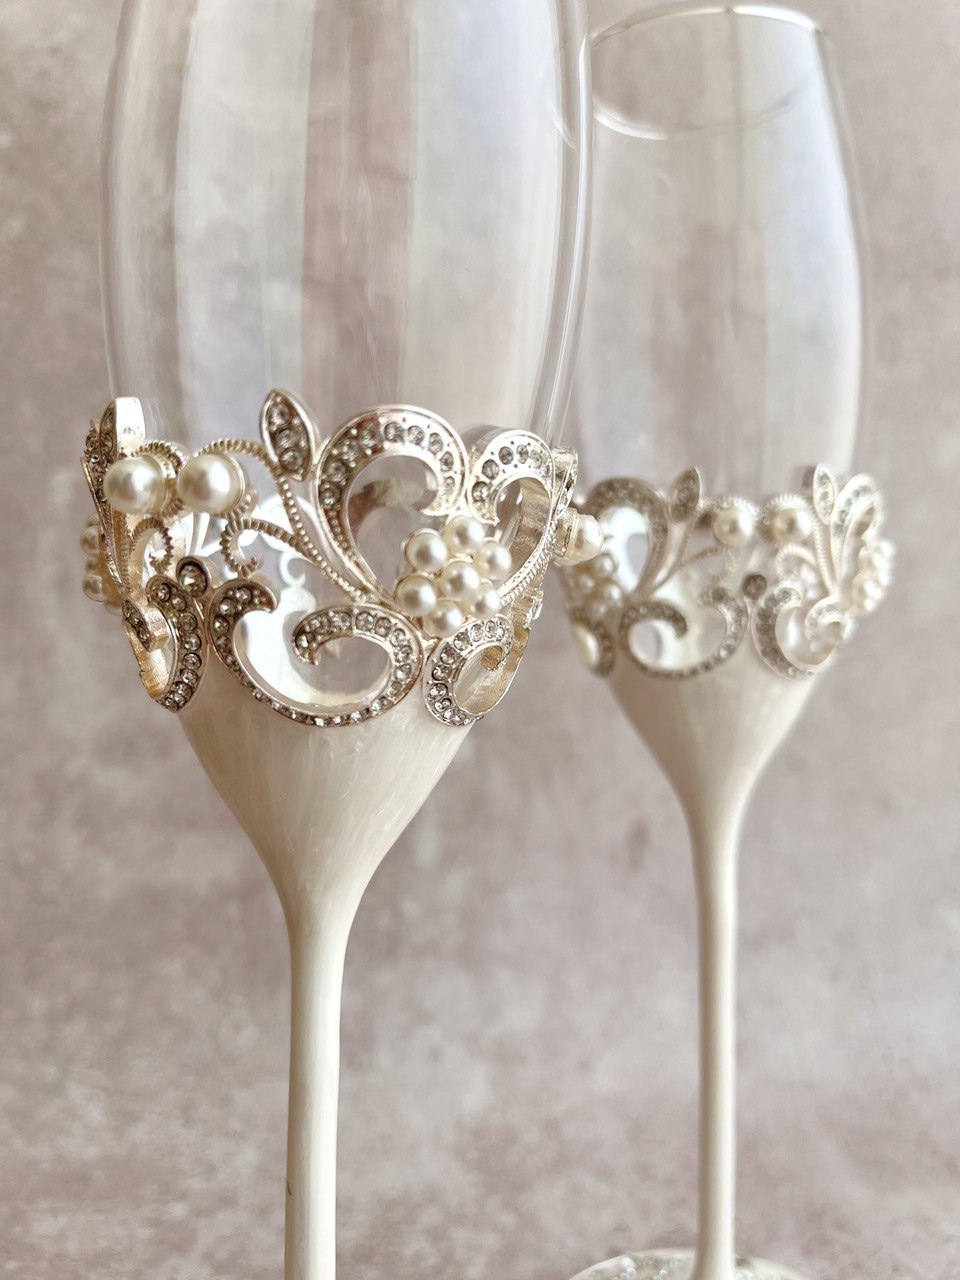 Copas de cristal bañadas en plata, con base de concha nacar encapsulada, cristales y perlas incrustadas 